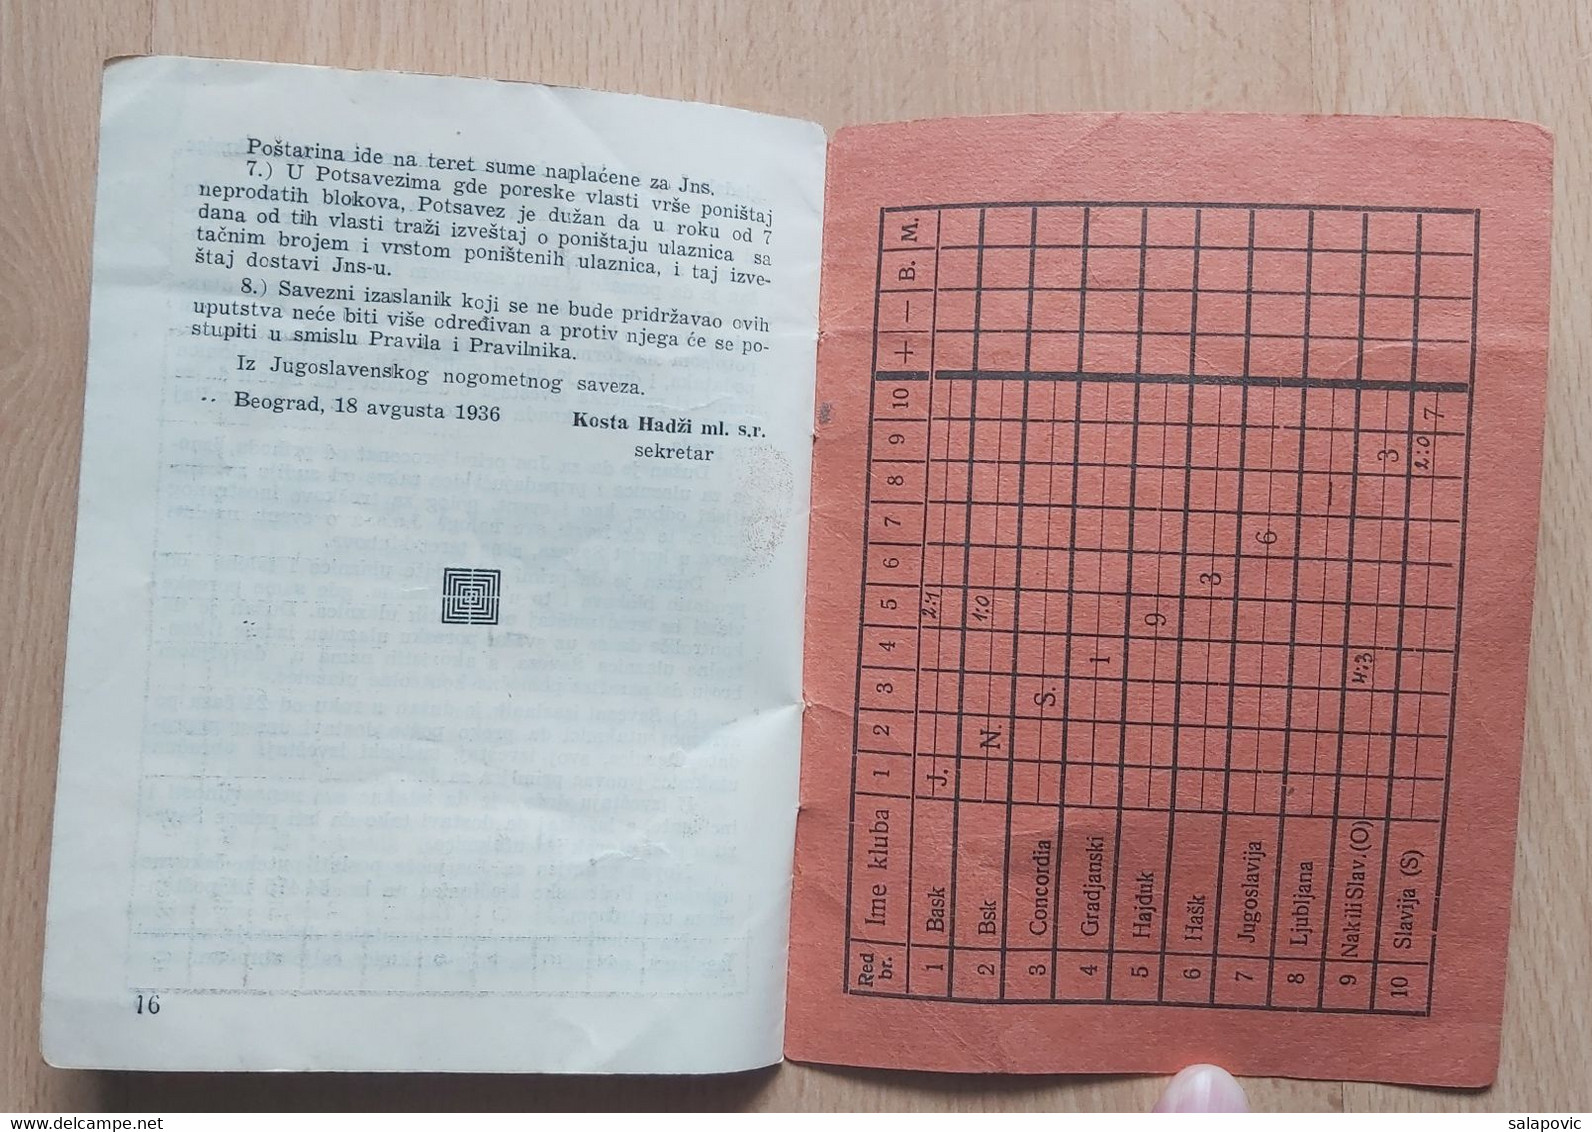 JUGOSLAVENSKI NOGOMETNI SAVEZ BEOGRAD  PROPOZICIJE DRŽAVNOG PRVENSTVA 1936-37  YUGOSLAV FOOTBALL ASSOCIATION - Books